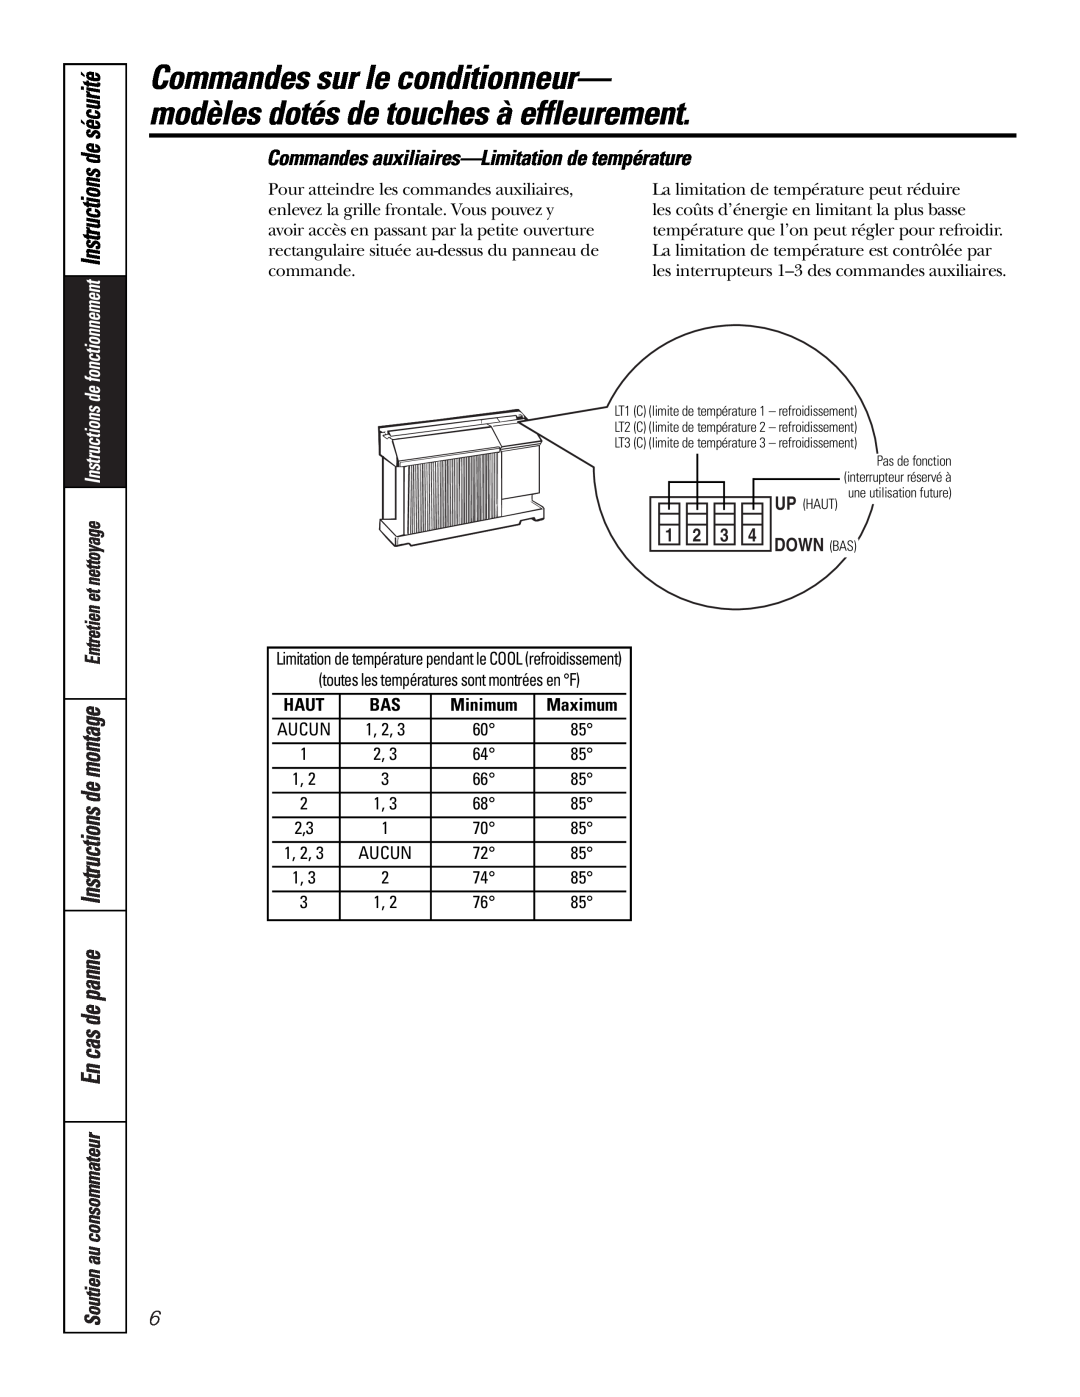 GE Cool Only installation instructions Commandes auxiliaires—Limitationde température, Haut, Minimum 